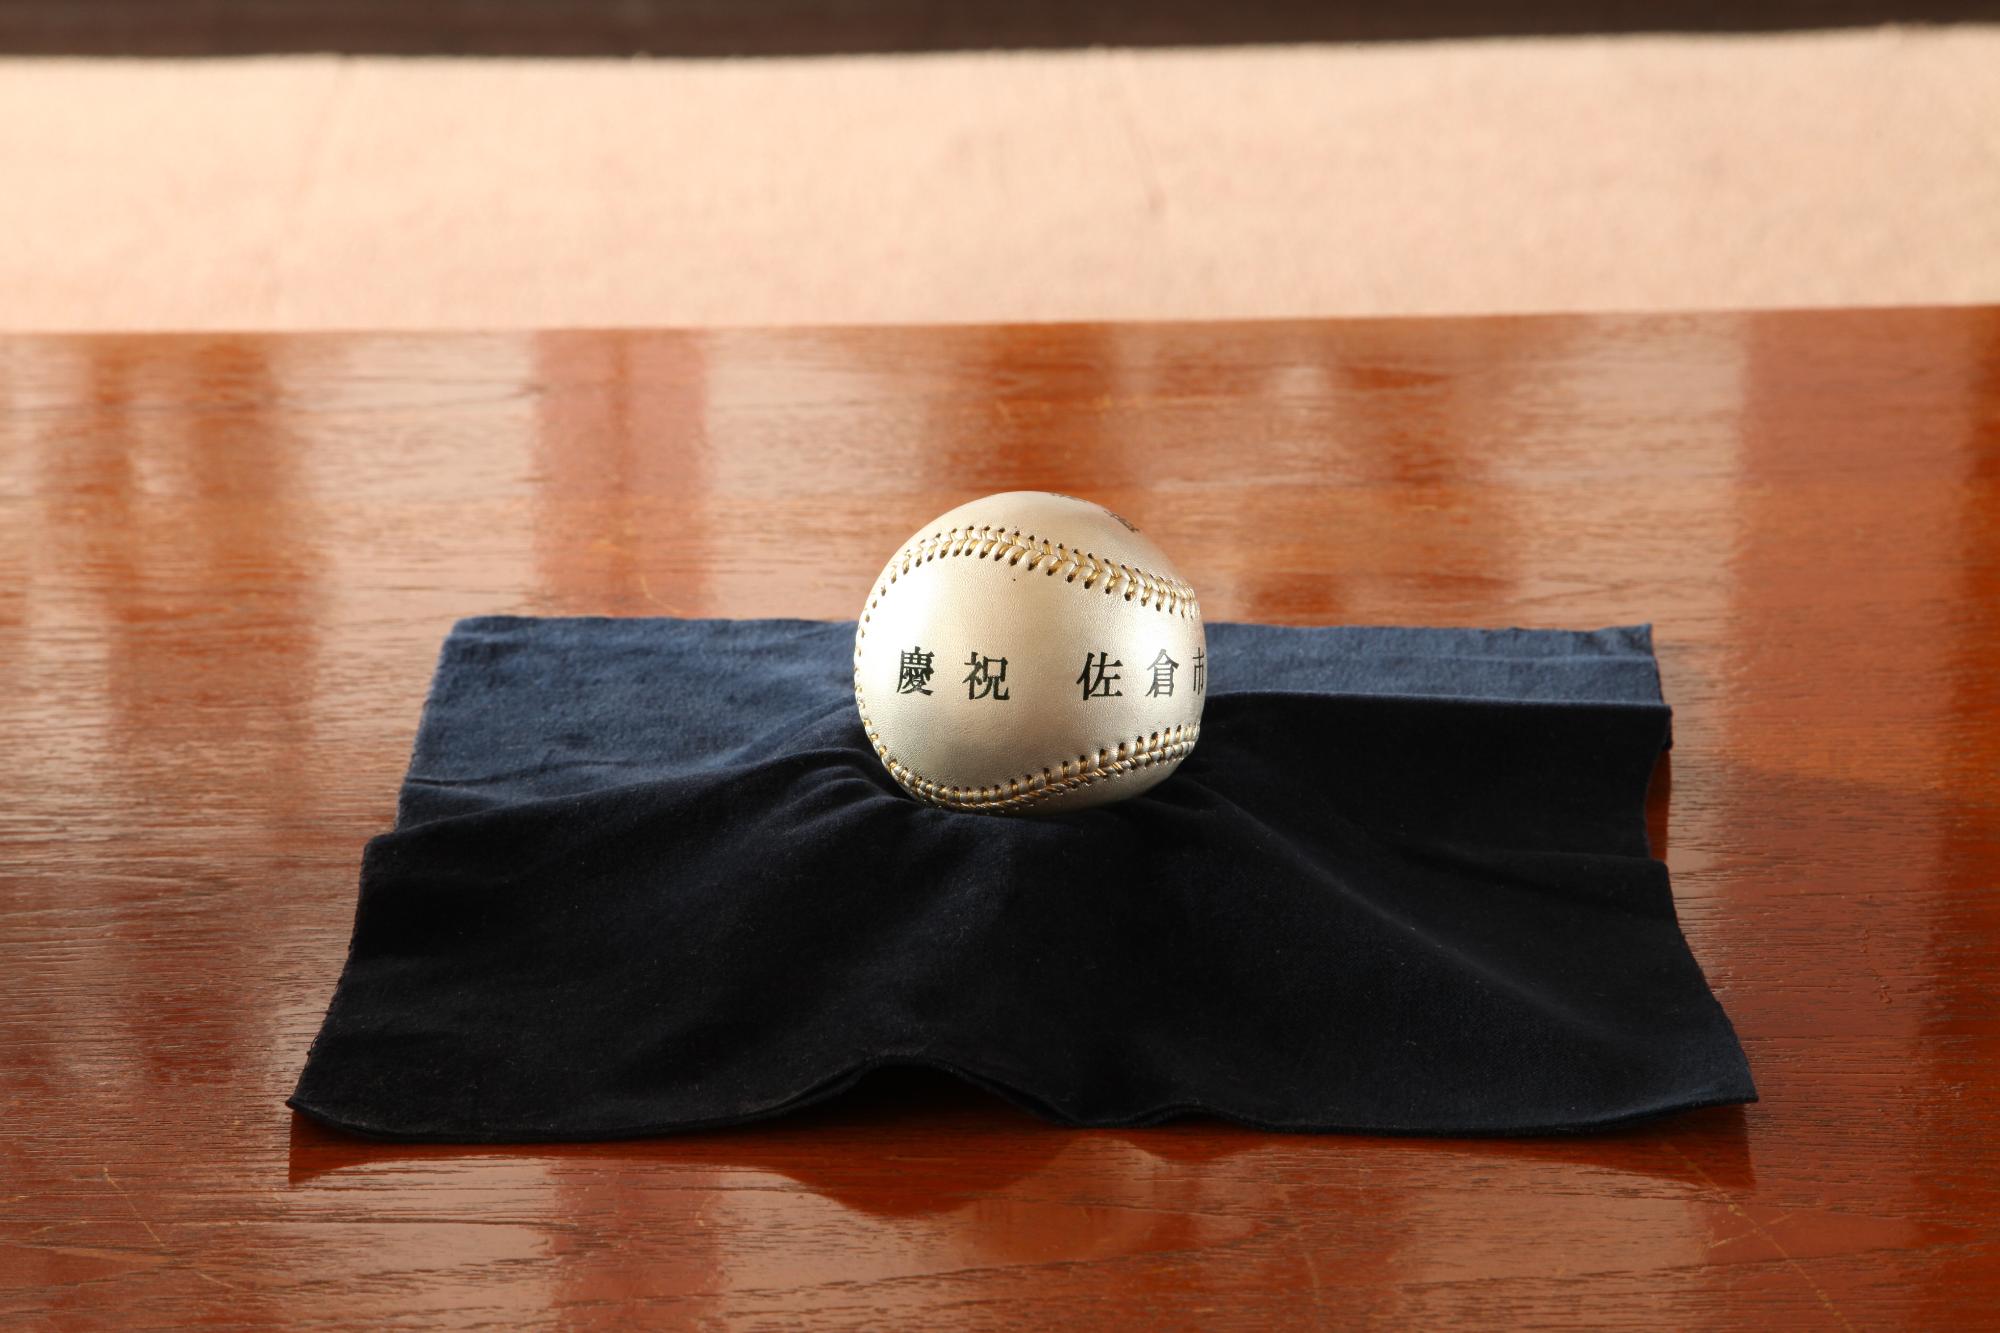 慶祝 佐倉市と書かれた銀色のボールが、黒い布の上に置かれている写真